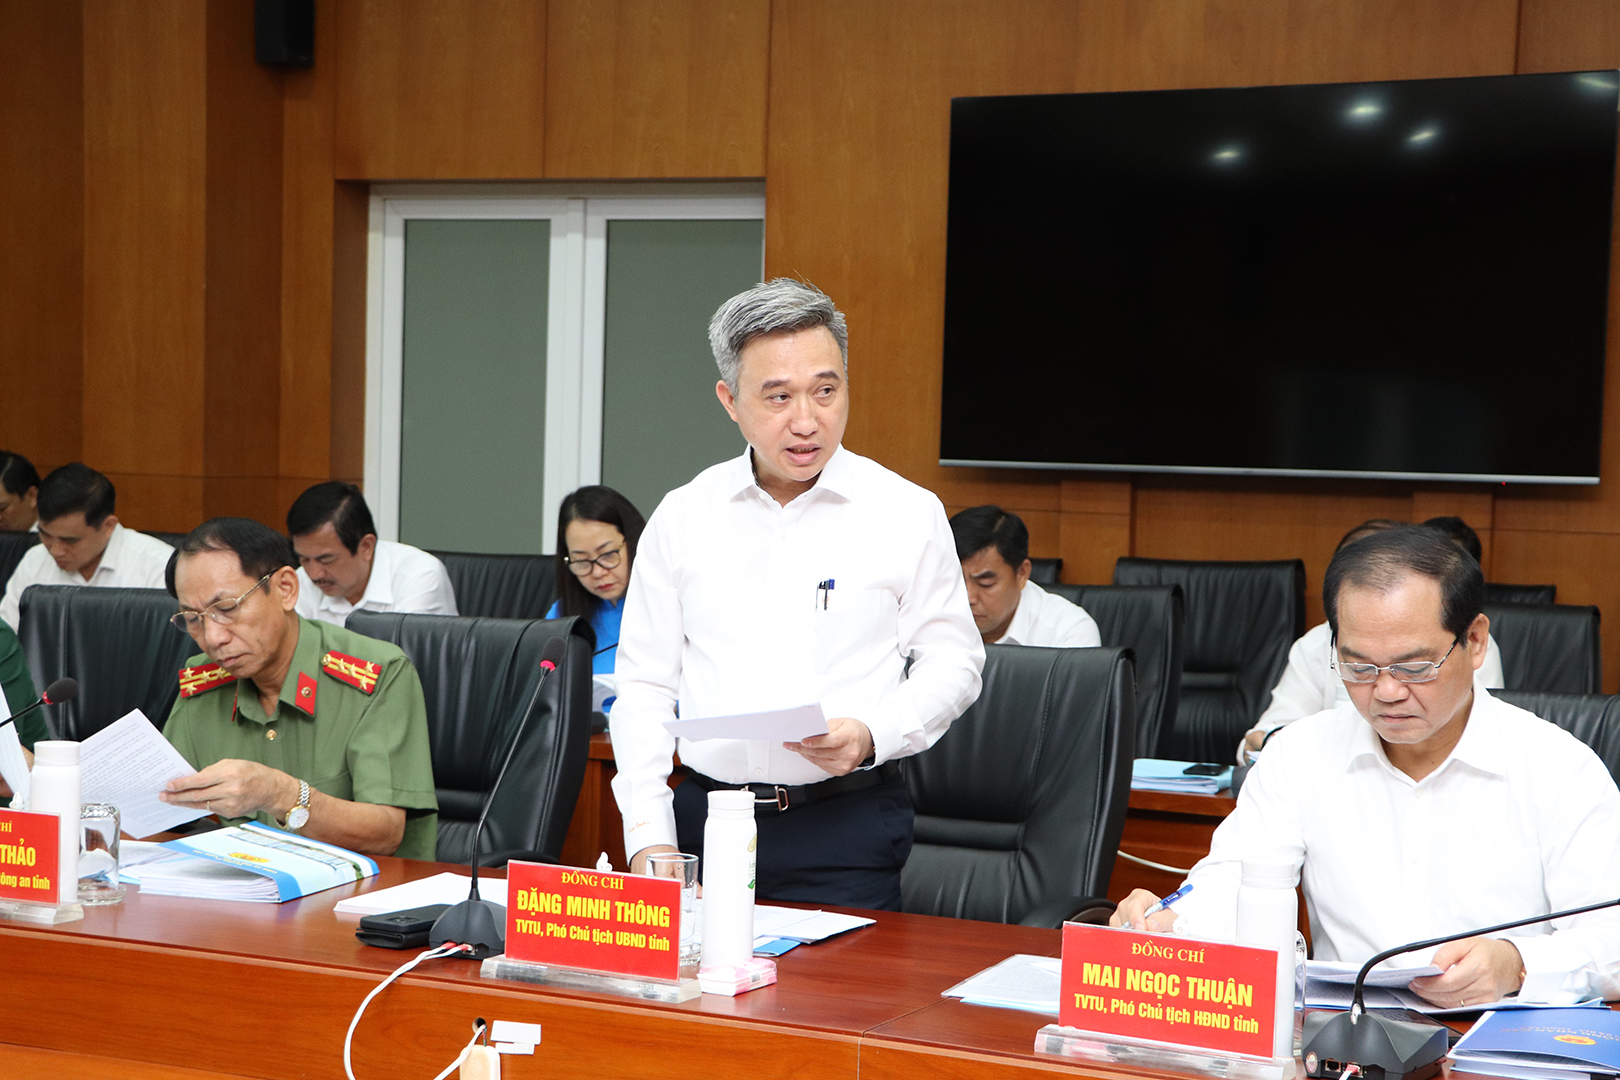 Ông Đặng Minh Thông, Phó Chủ tịch UBND tỉnh báo cáo tình hình nhiệm vụ của Ban cán sự đảng UBND tỉnh.